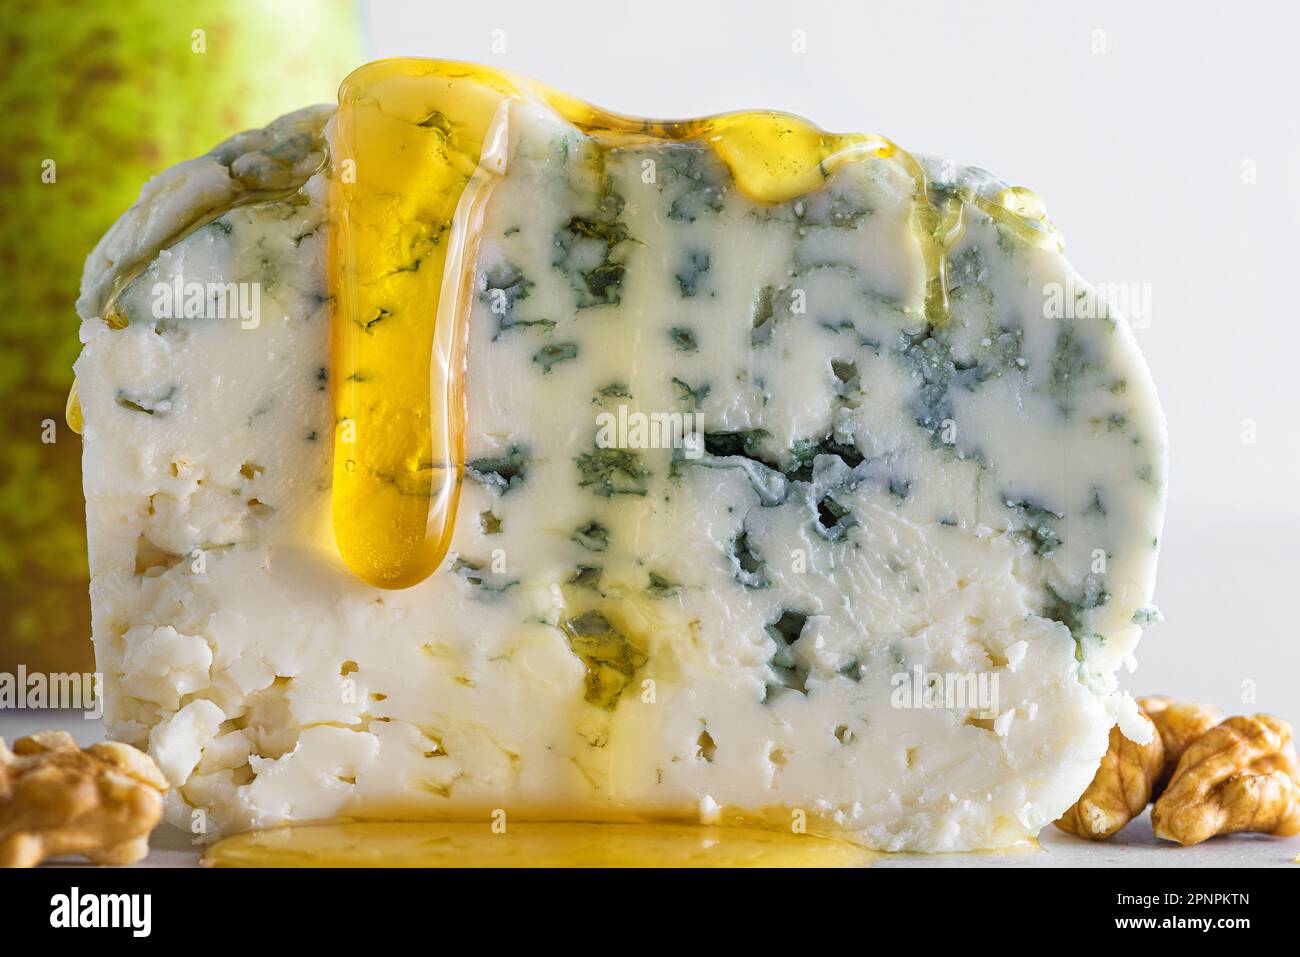 Formaggio blu con miele, pera e noci su fondo bianco. Antipasto italiano. Cibo gustoso Foto Stock